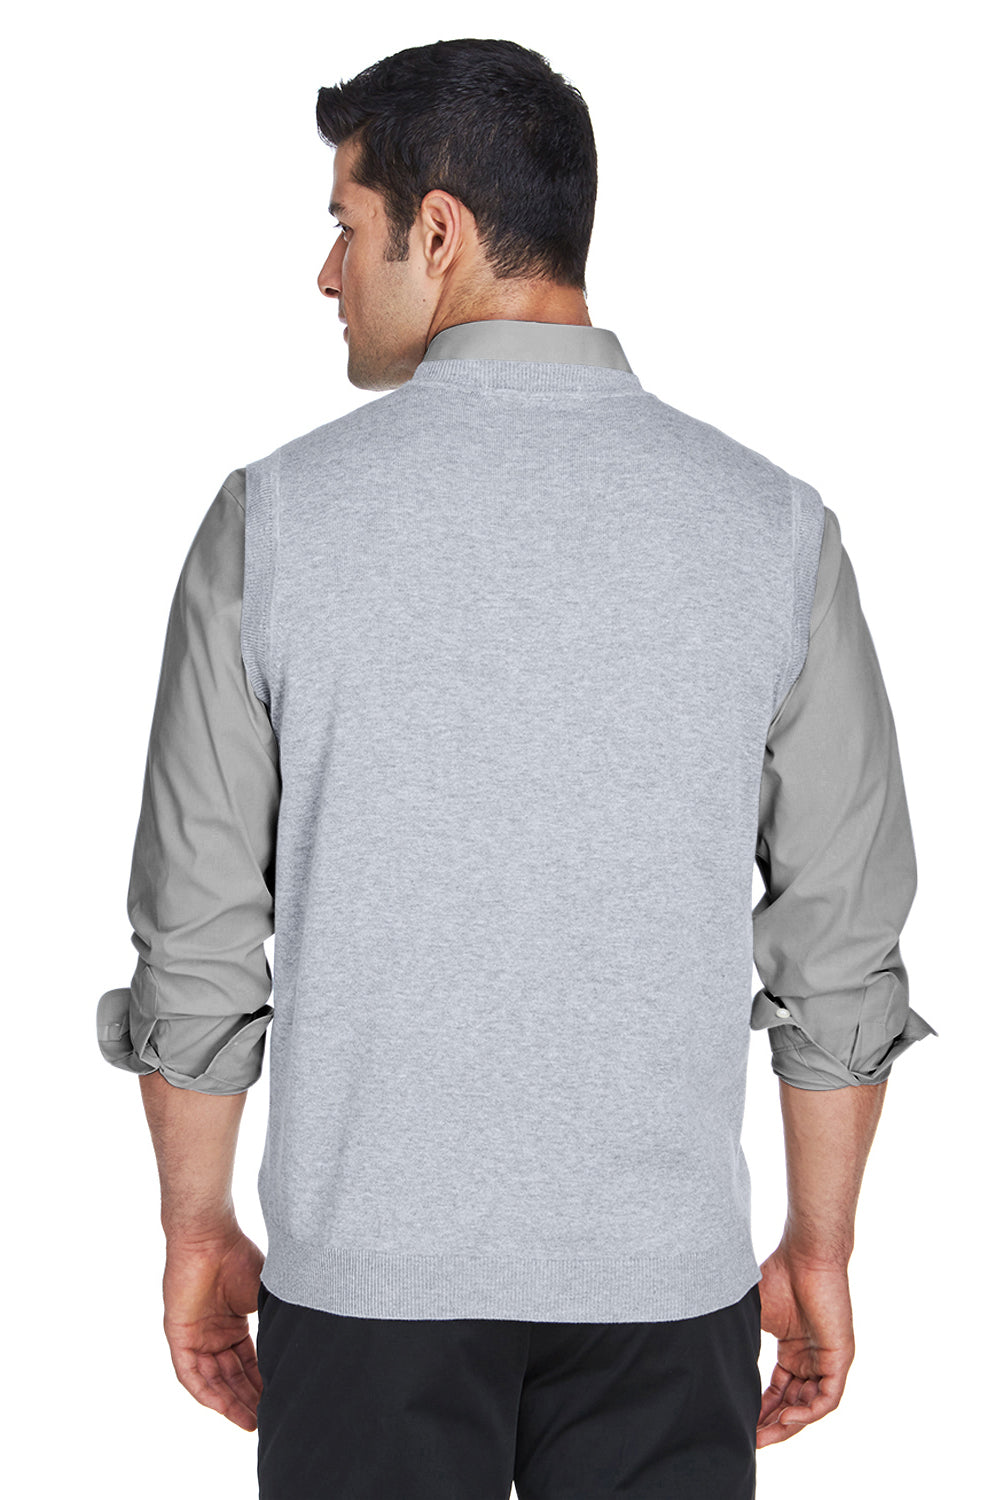 Devon & Jones D477 Mens Wrinkle Resistant V-Neck Sweater Vest Heather Grey Back